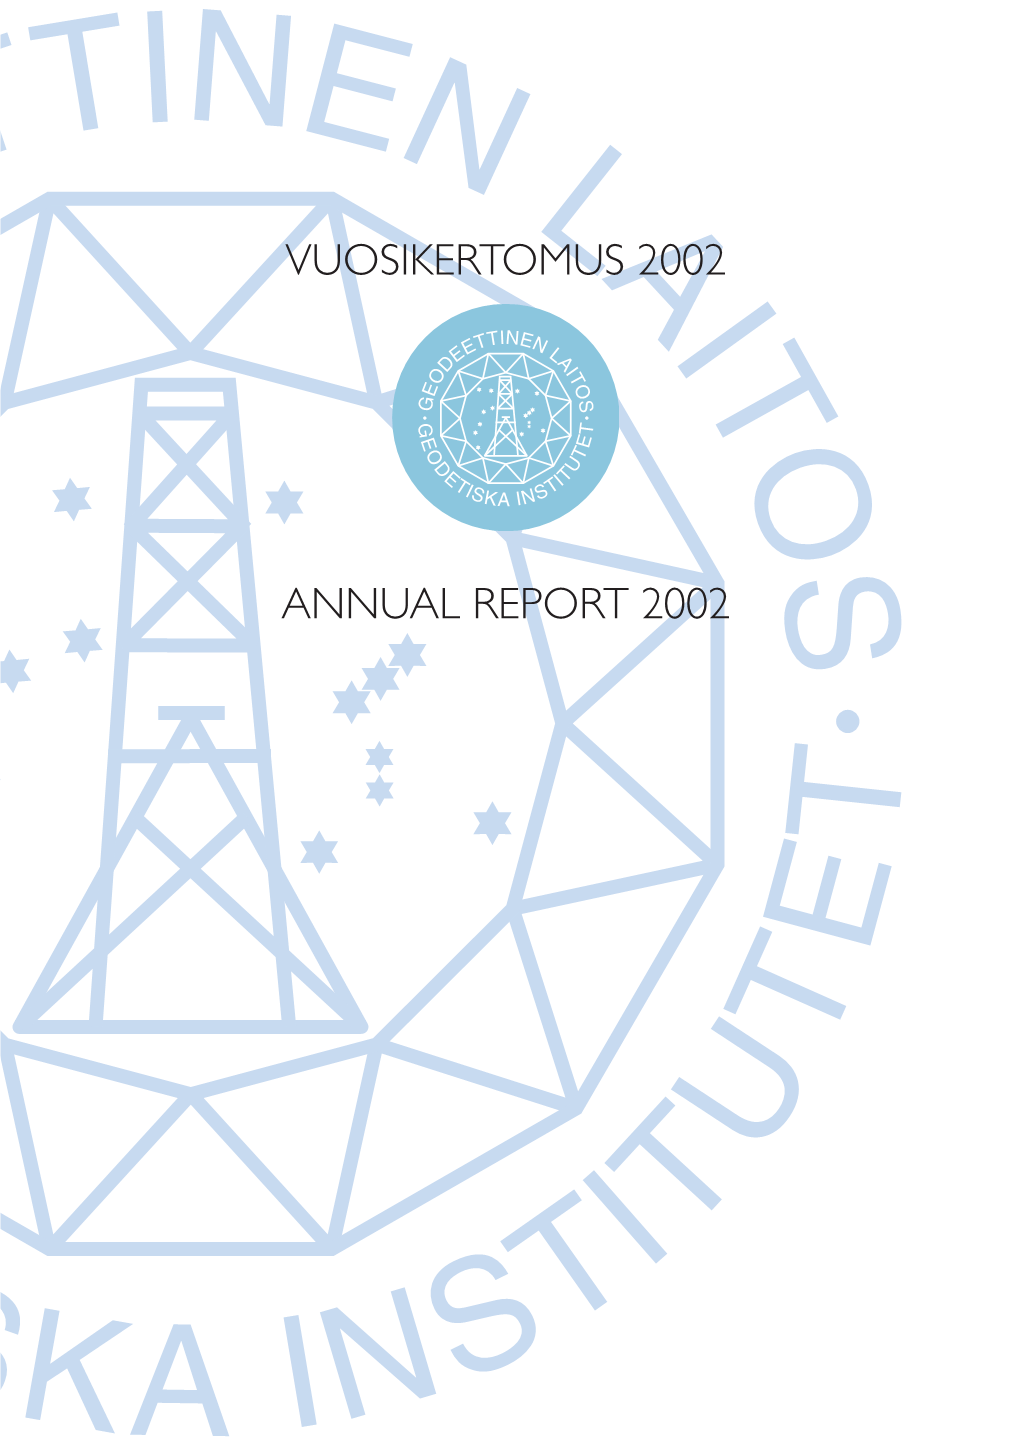 Vuosikertomus 2002 Annual Report 2002